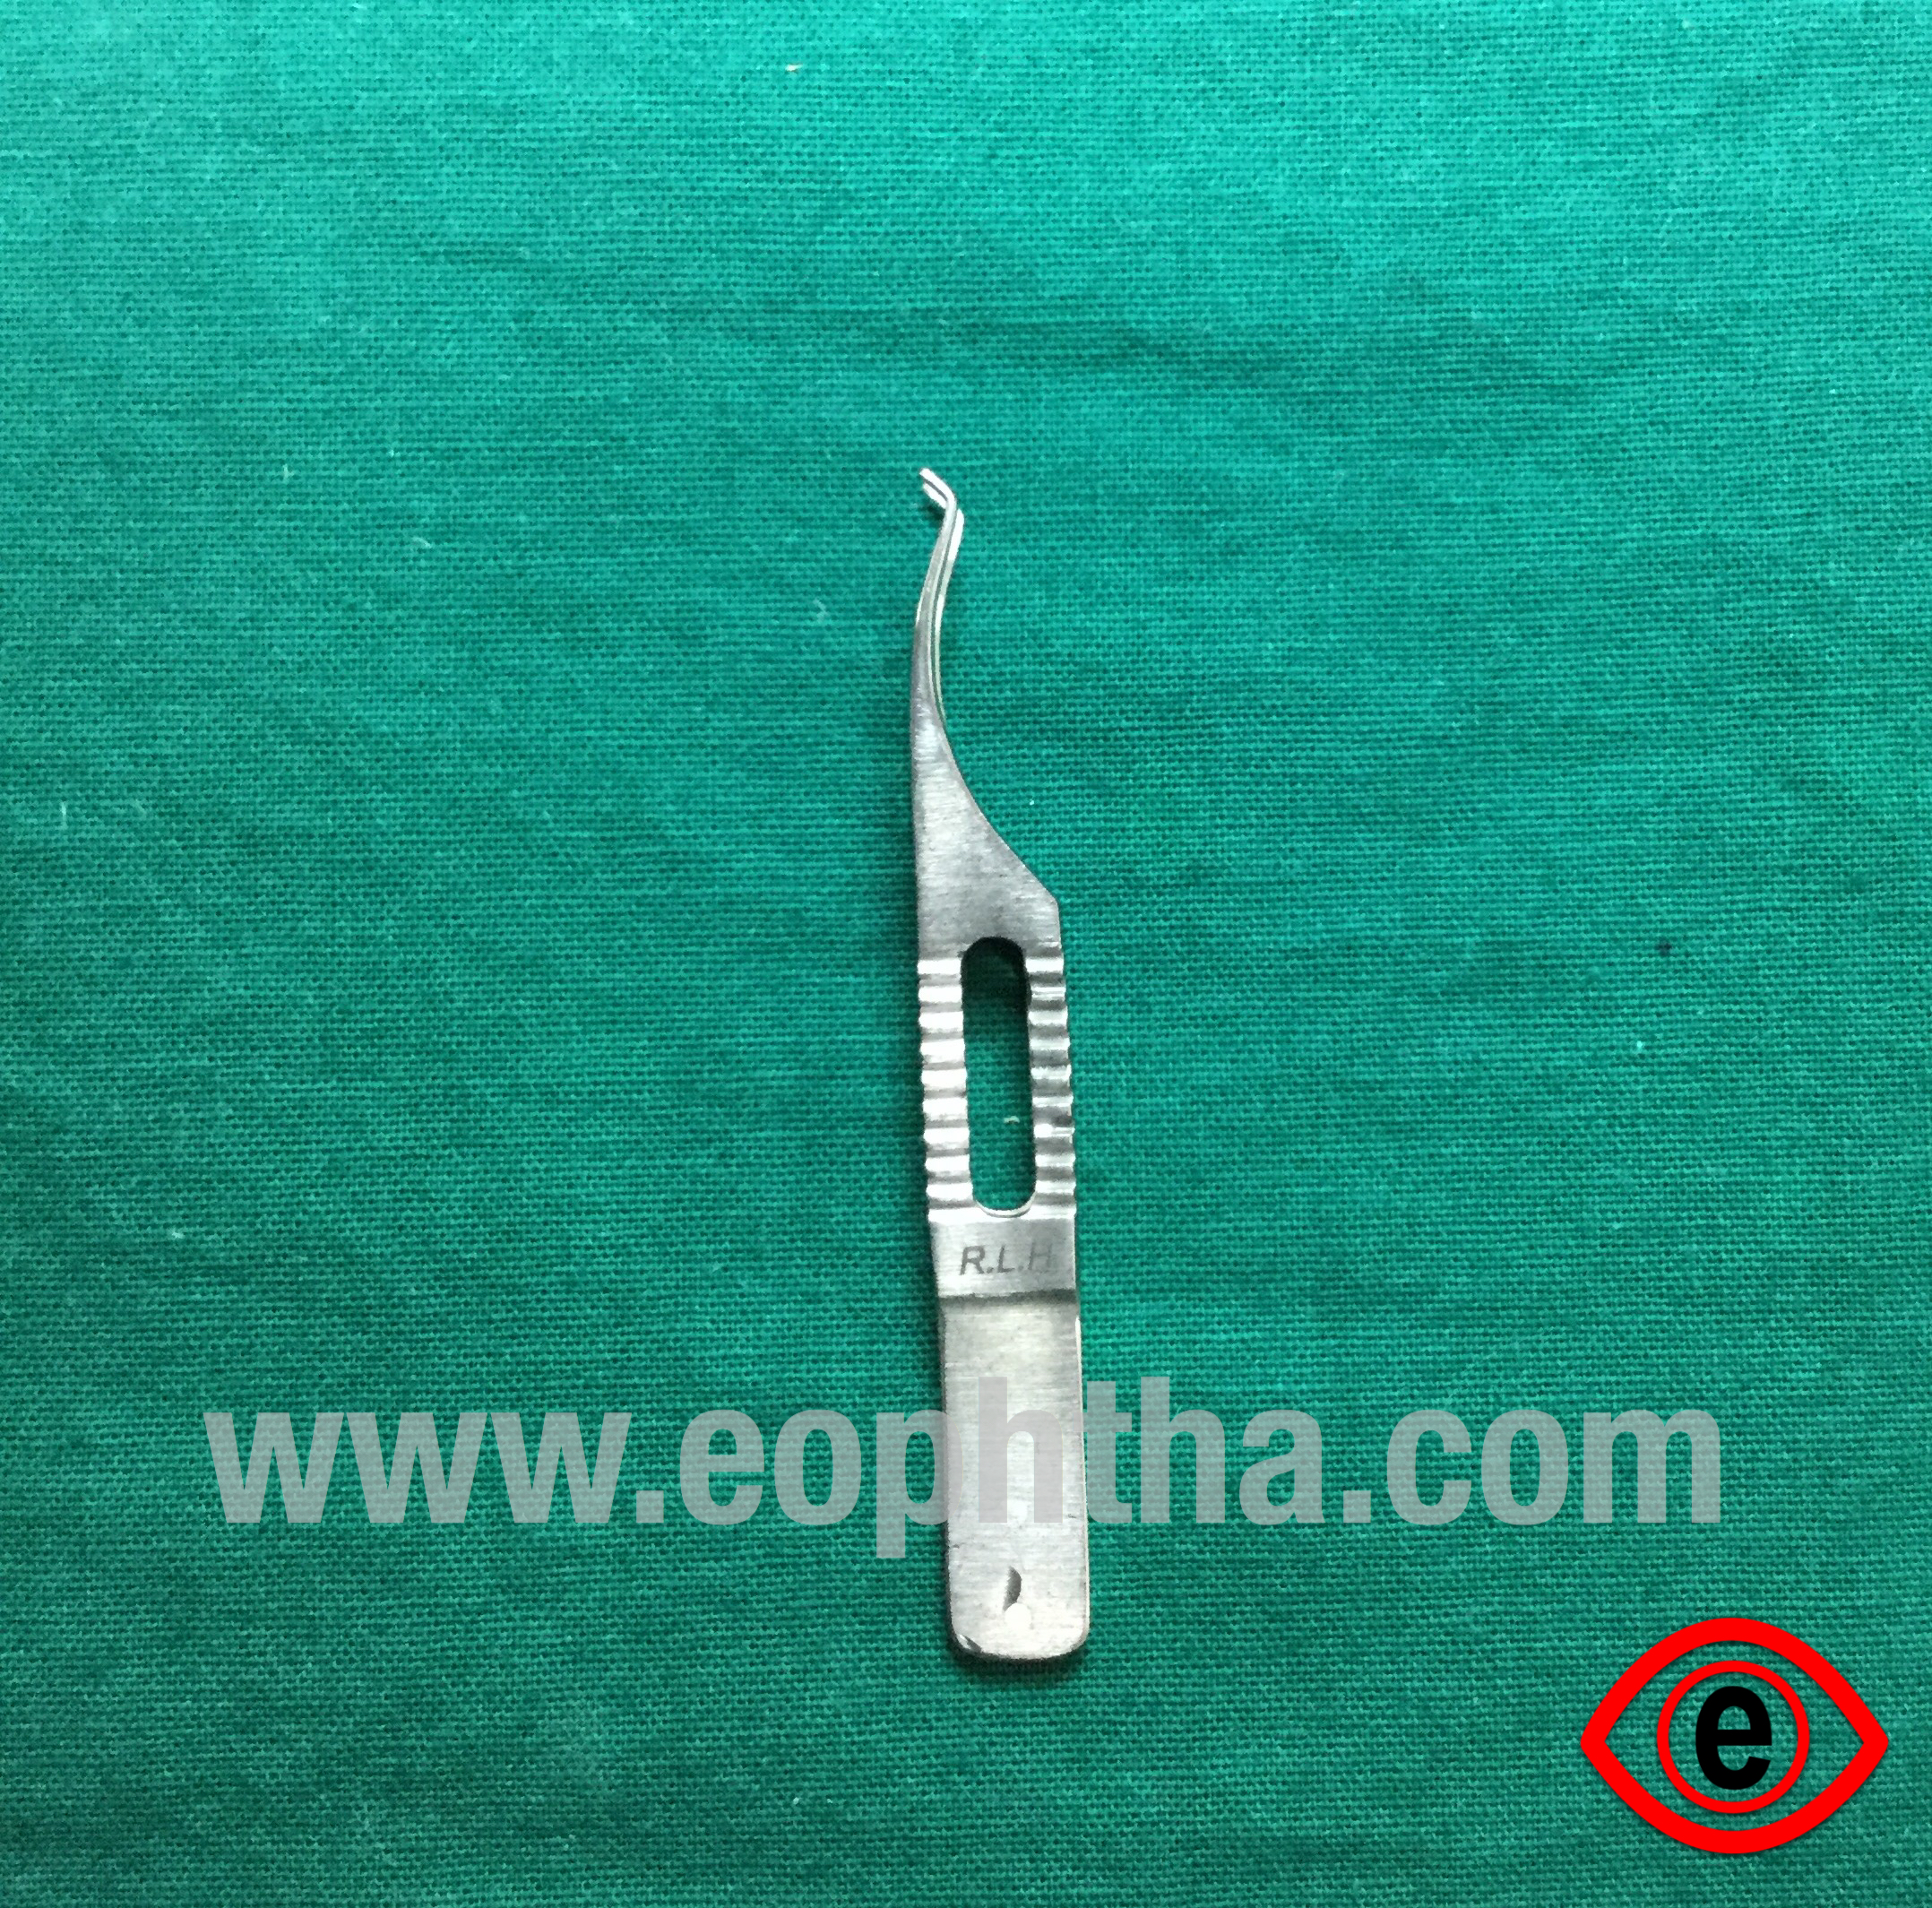 Endolaryngeal Micro Scissors